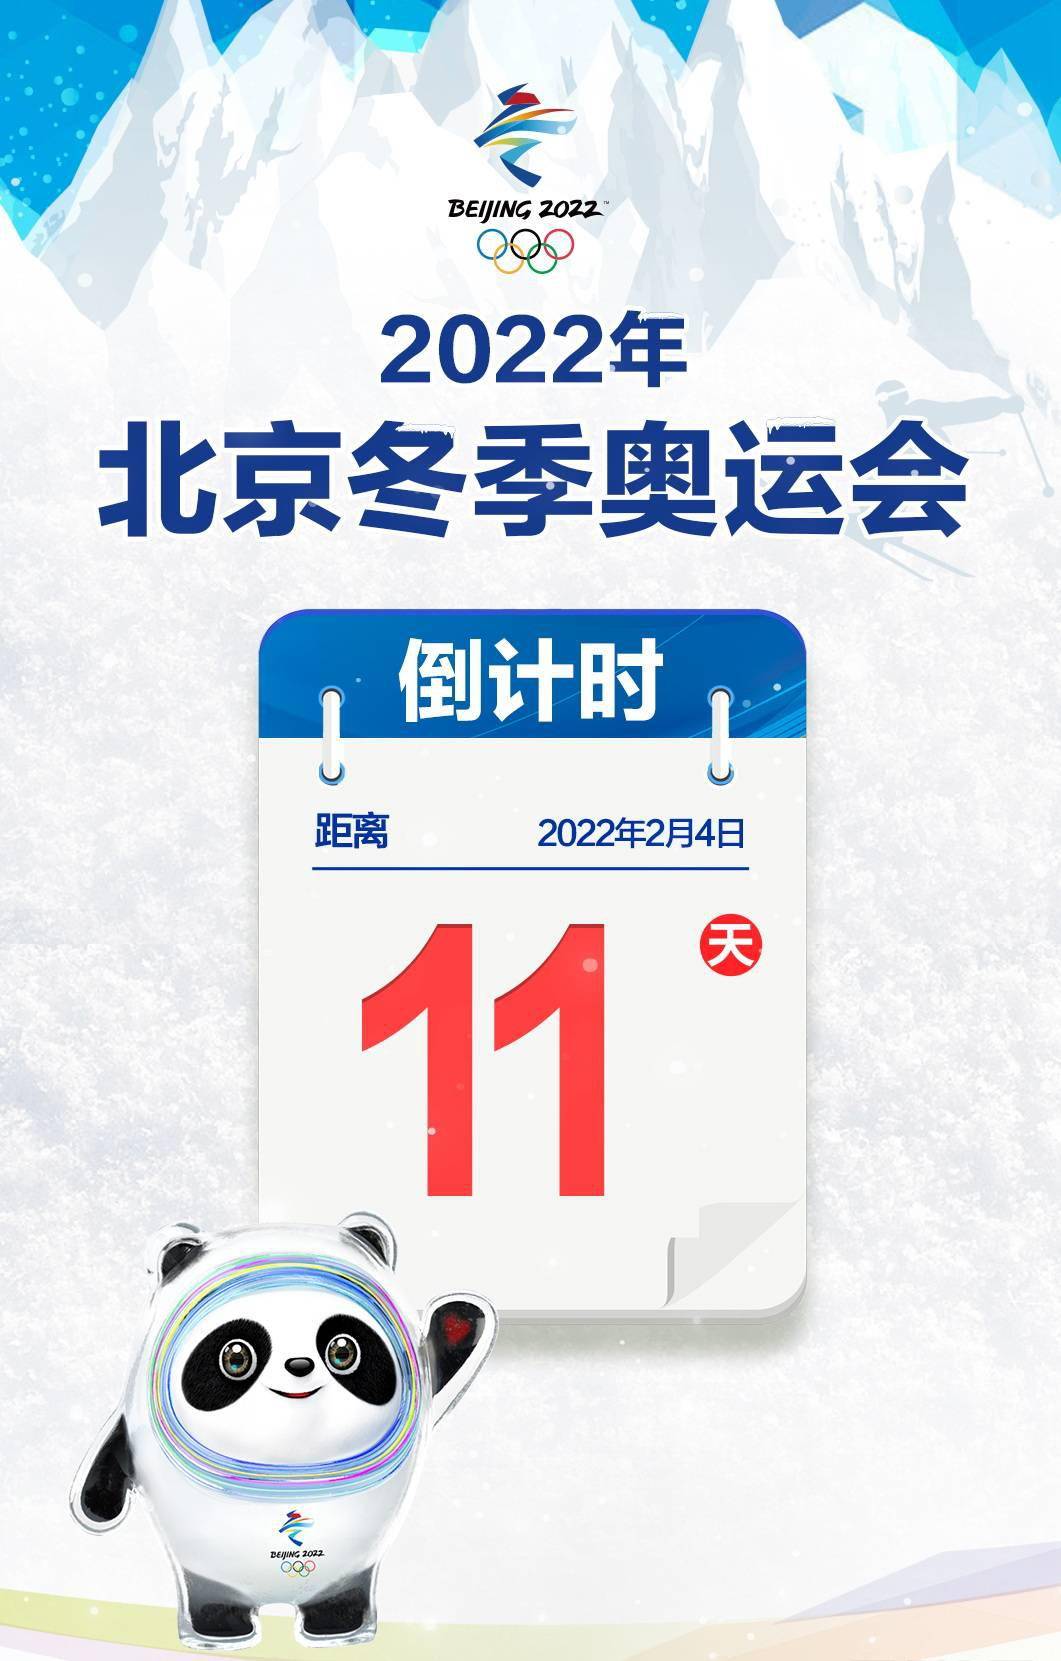 米乐:关于申办2022年冬季奥林匹克运动会有关情况的报告(组图)